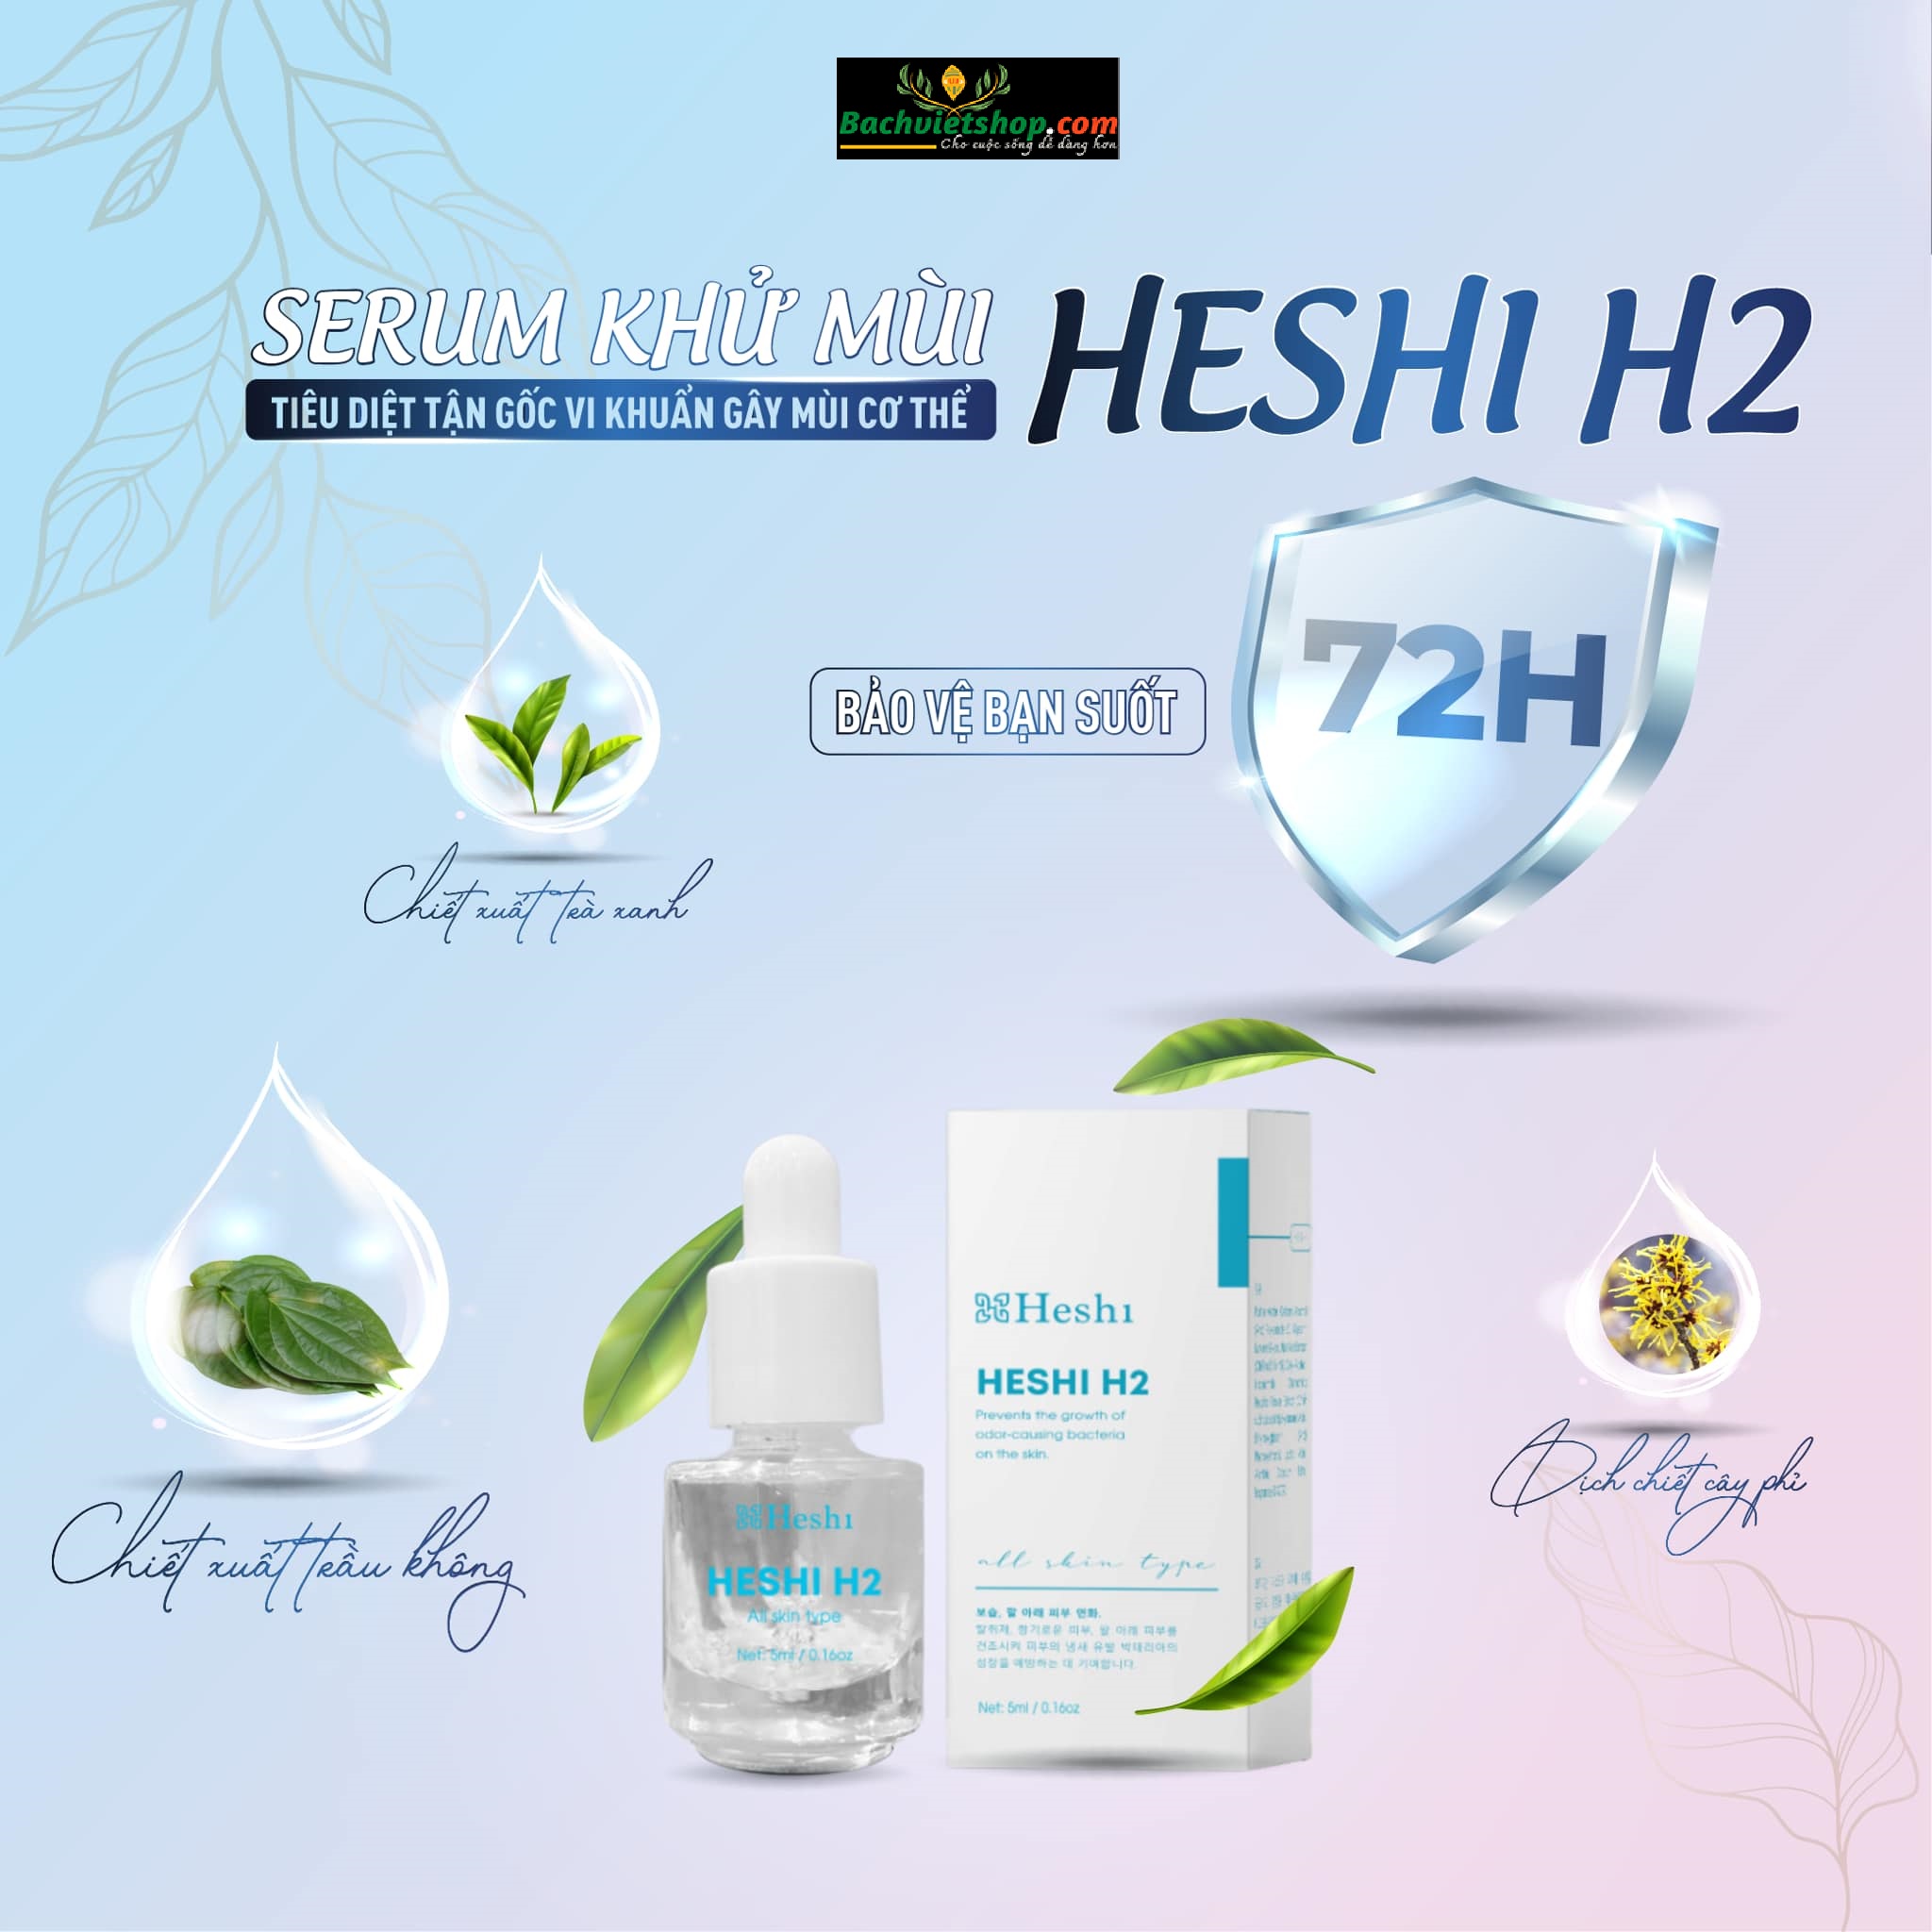 Serum khử mùi cơ thể Heshi H2 chính hãng của Heshi khử mùi hôi vùng da dưới cánh tay, giúp da khô thoáng